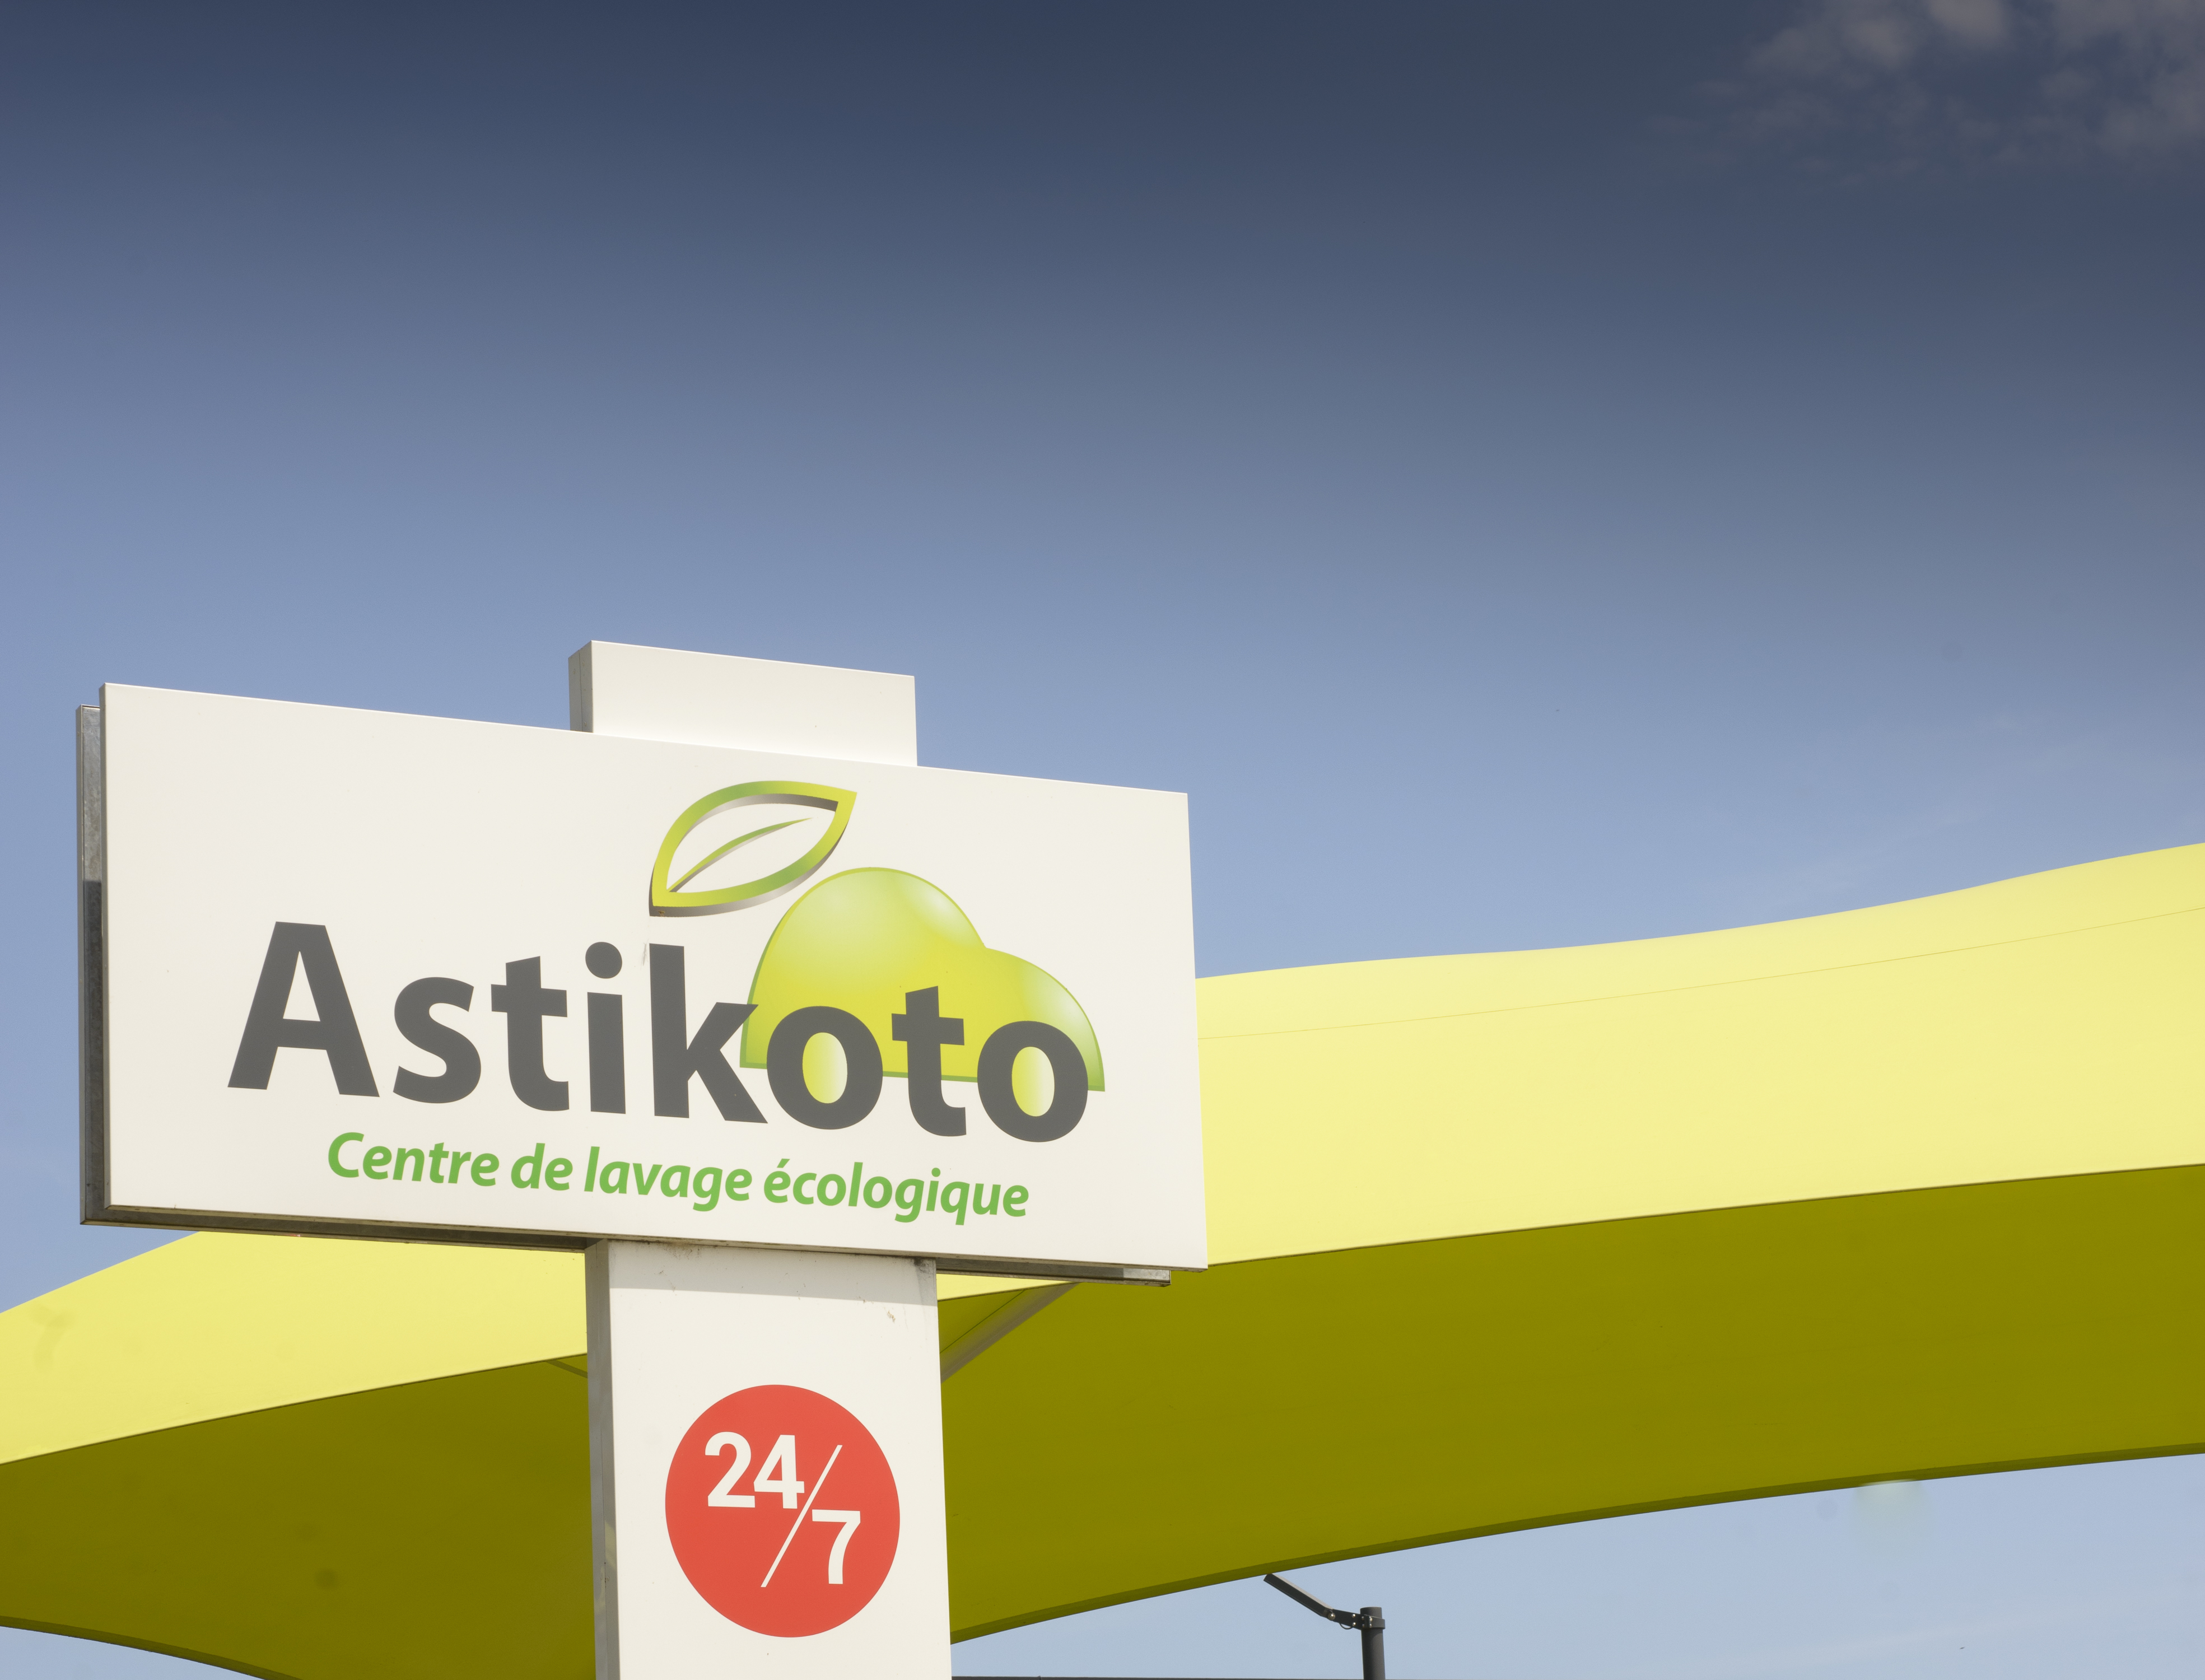 Station de lavage écologique Astikoto à Clisson